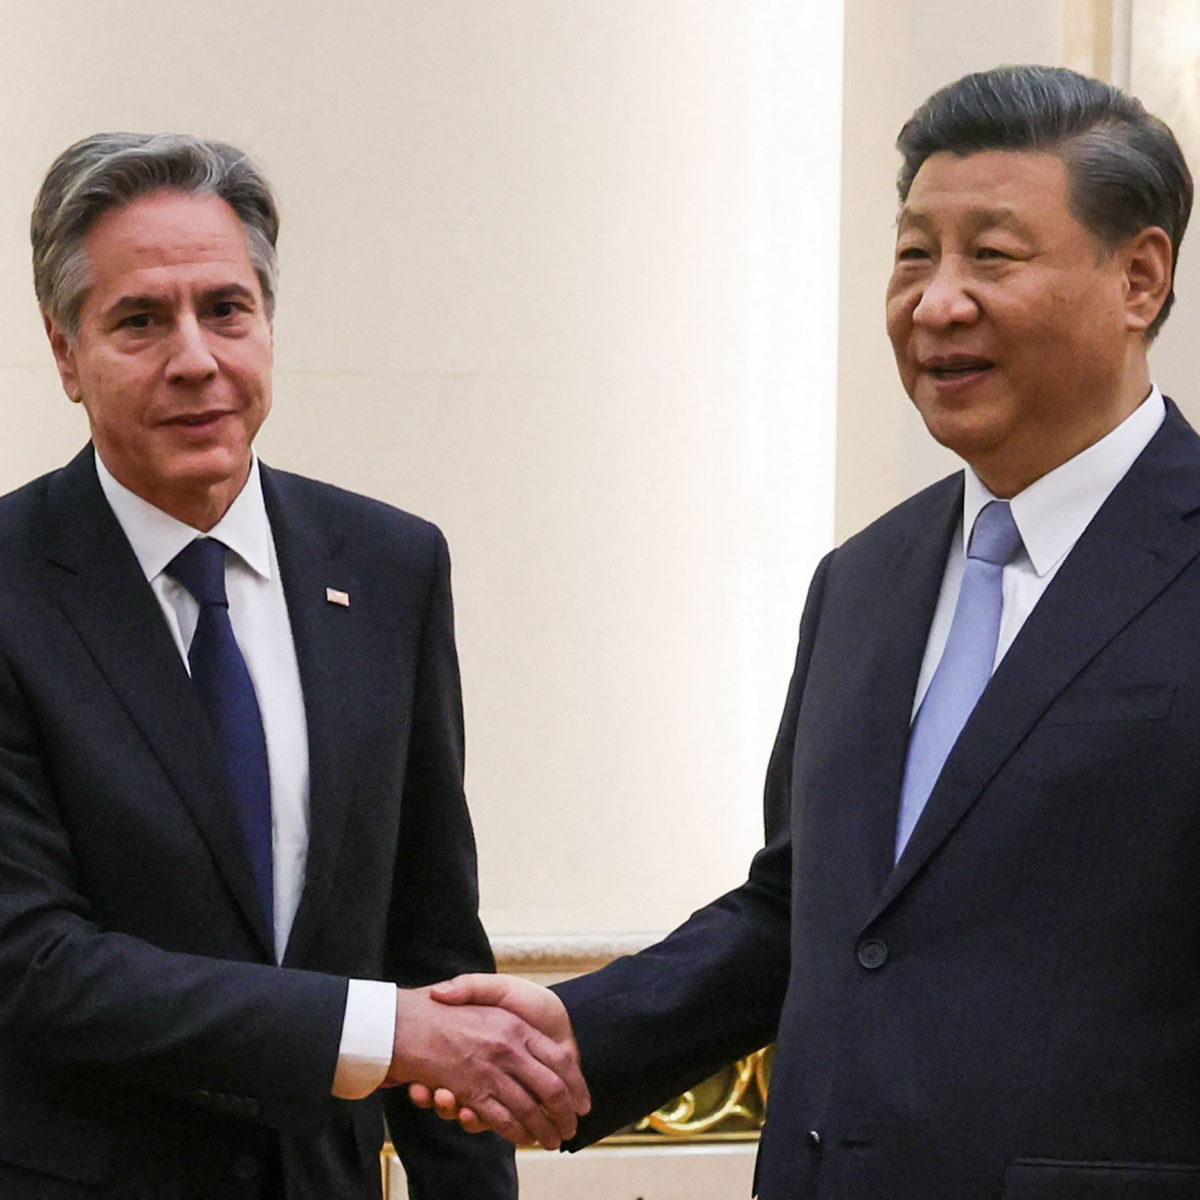 Перспективы отношений США и Китая после визита Блинкена: оценки экспертов